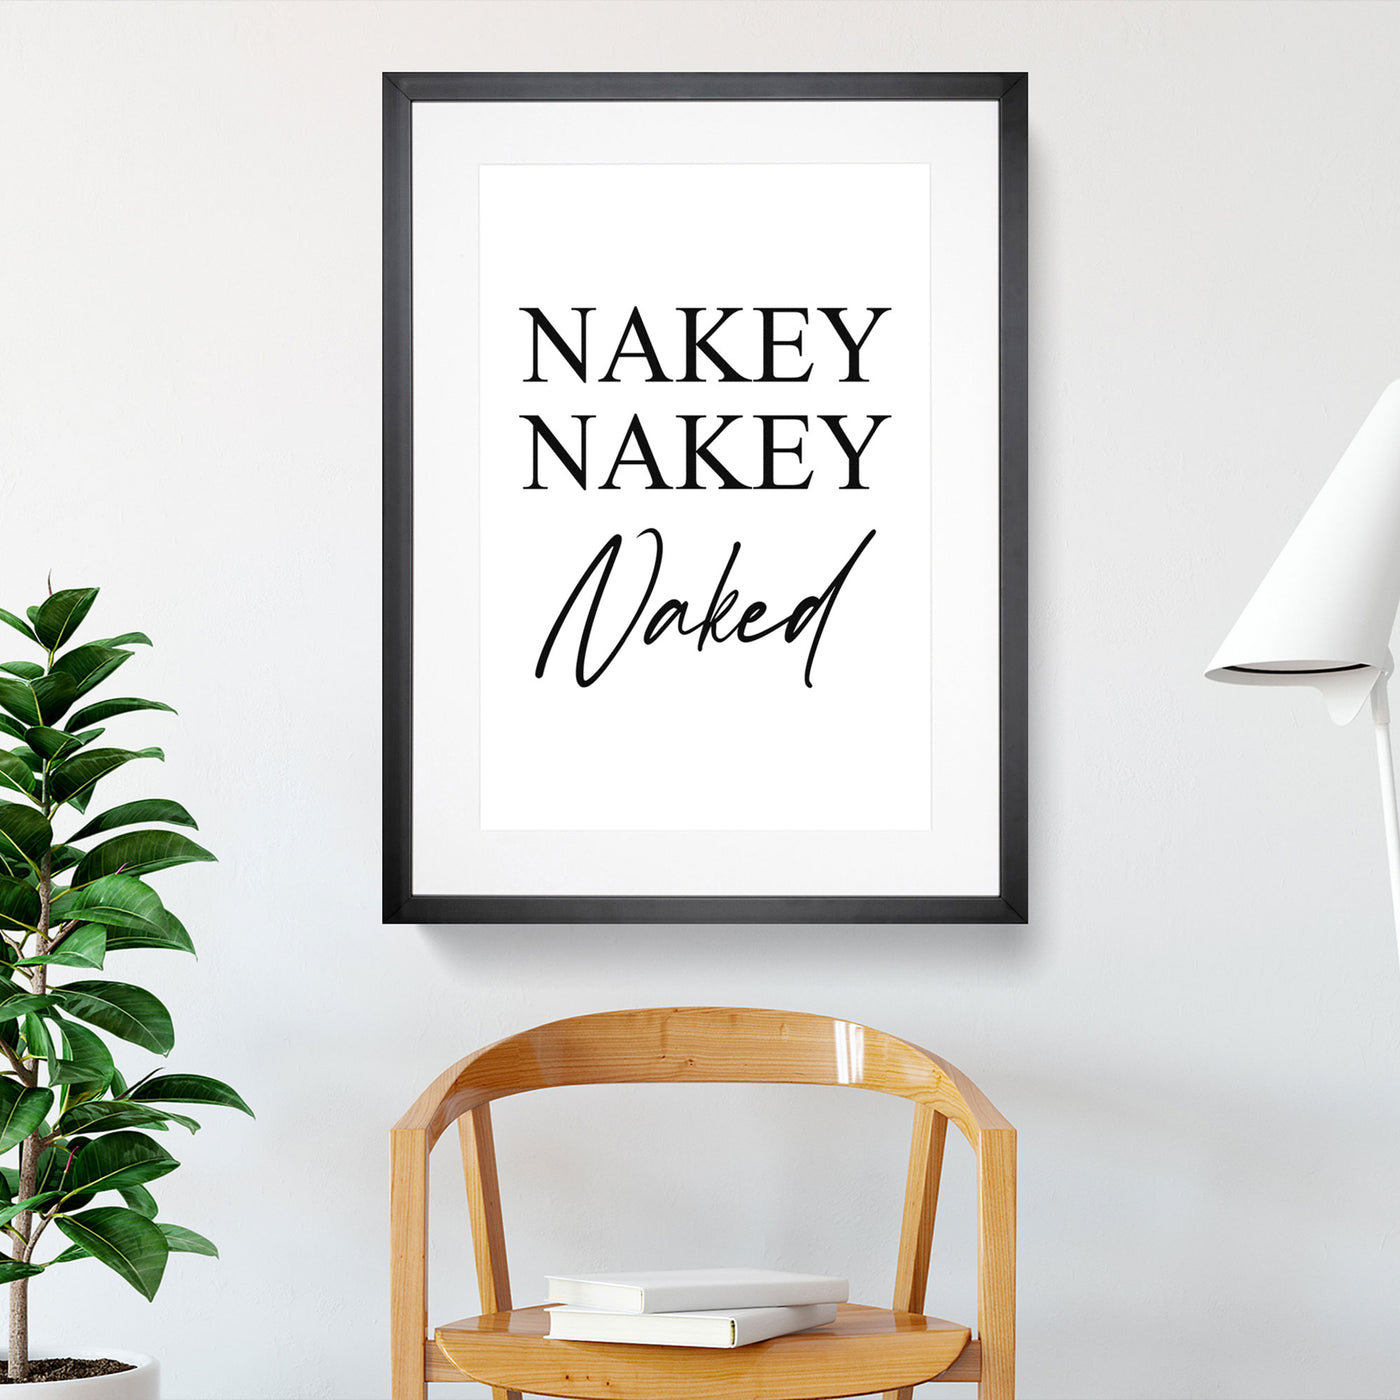 Nakey Nakey Naked